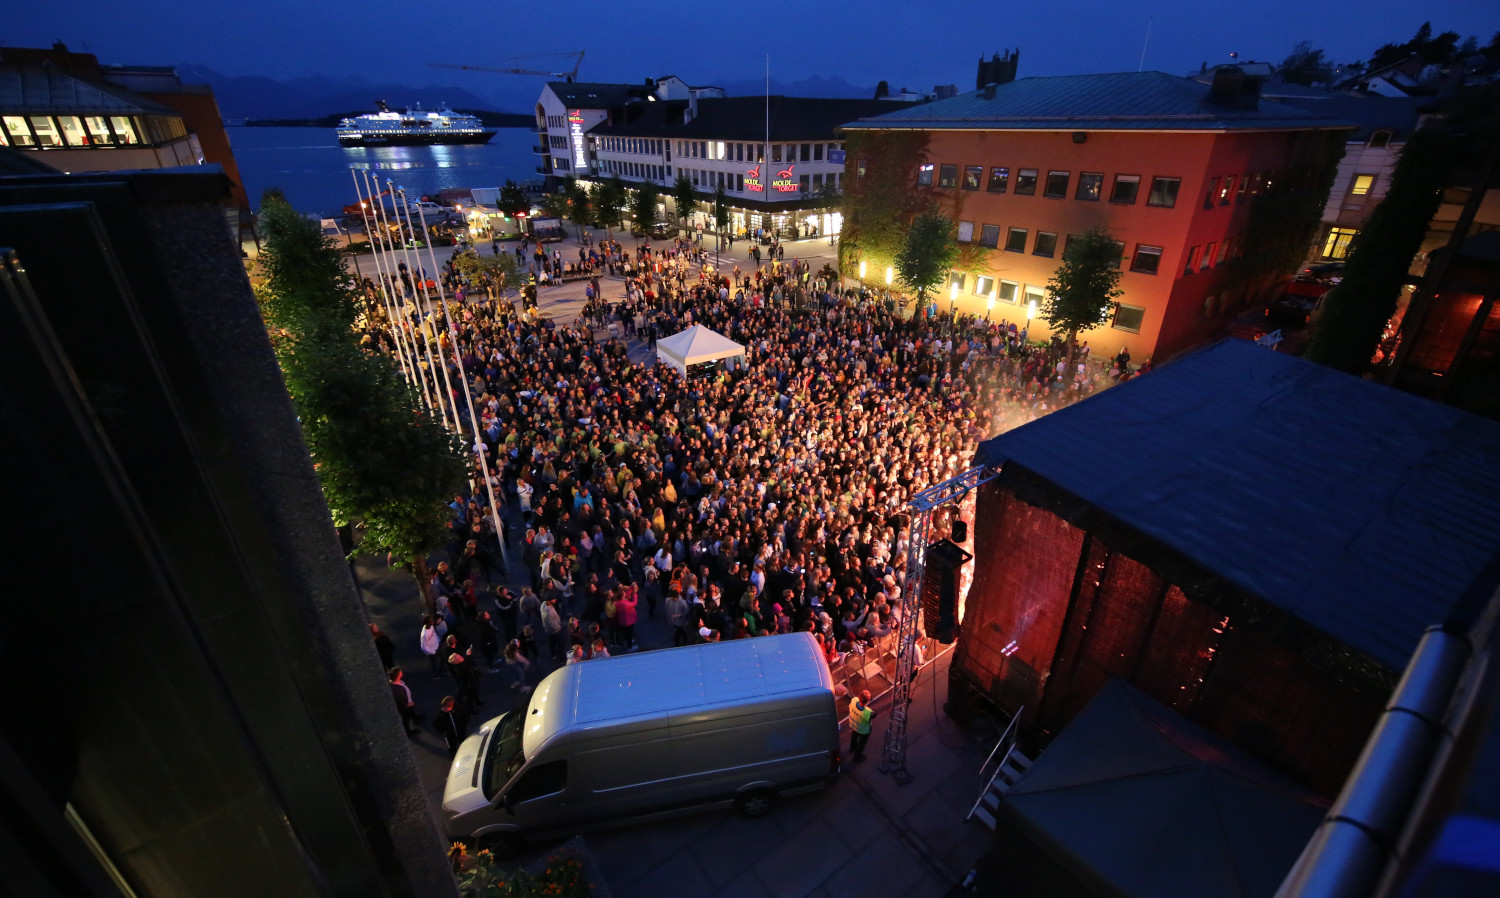 Bilde fra tidligere års konsert på Rådhusplassen. Foto: Arild Johan Waagbø.